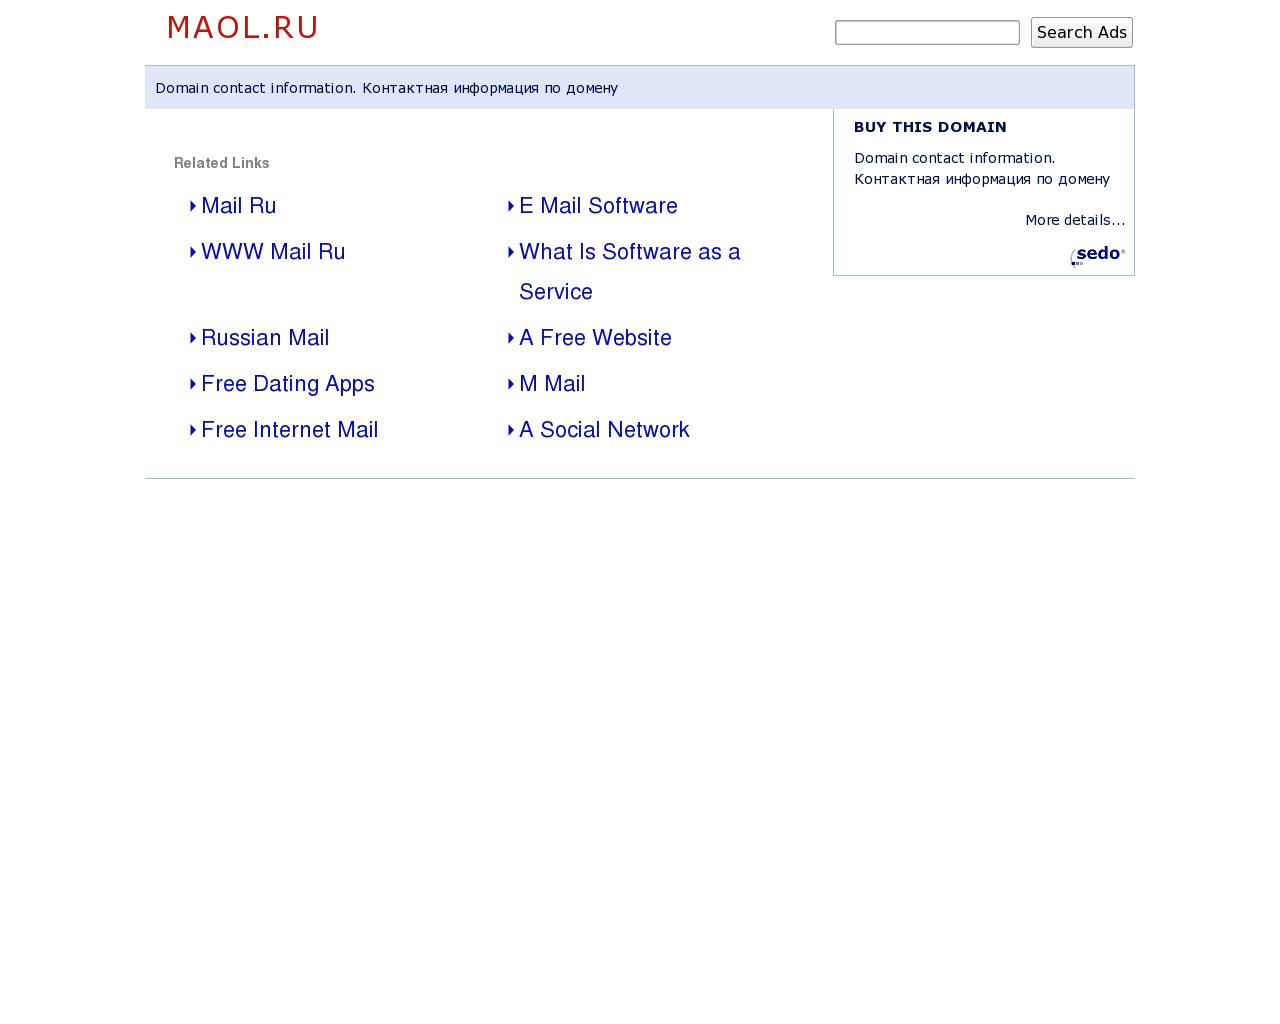 Изображение сайта maol.ru в разрешении 1280x1024